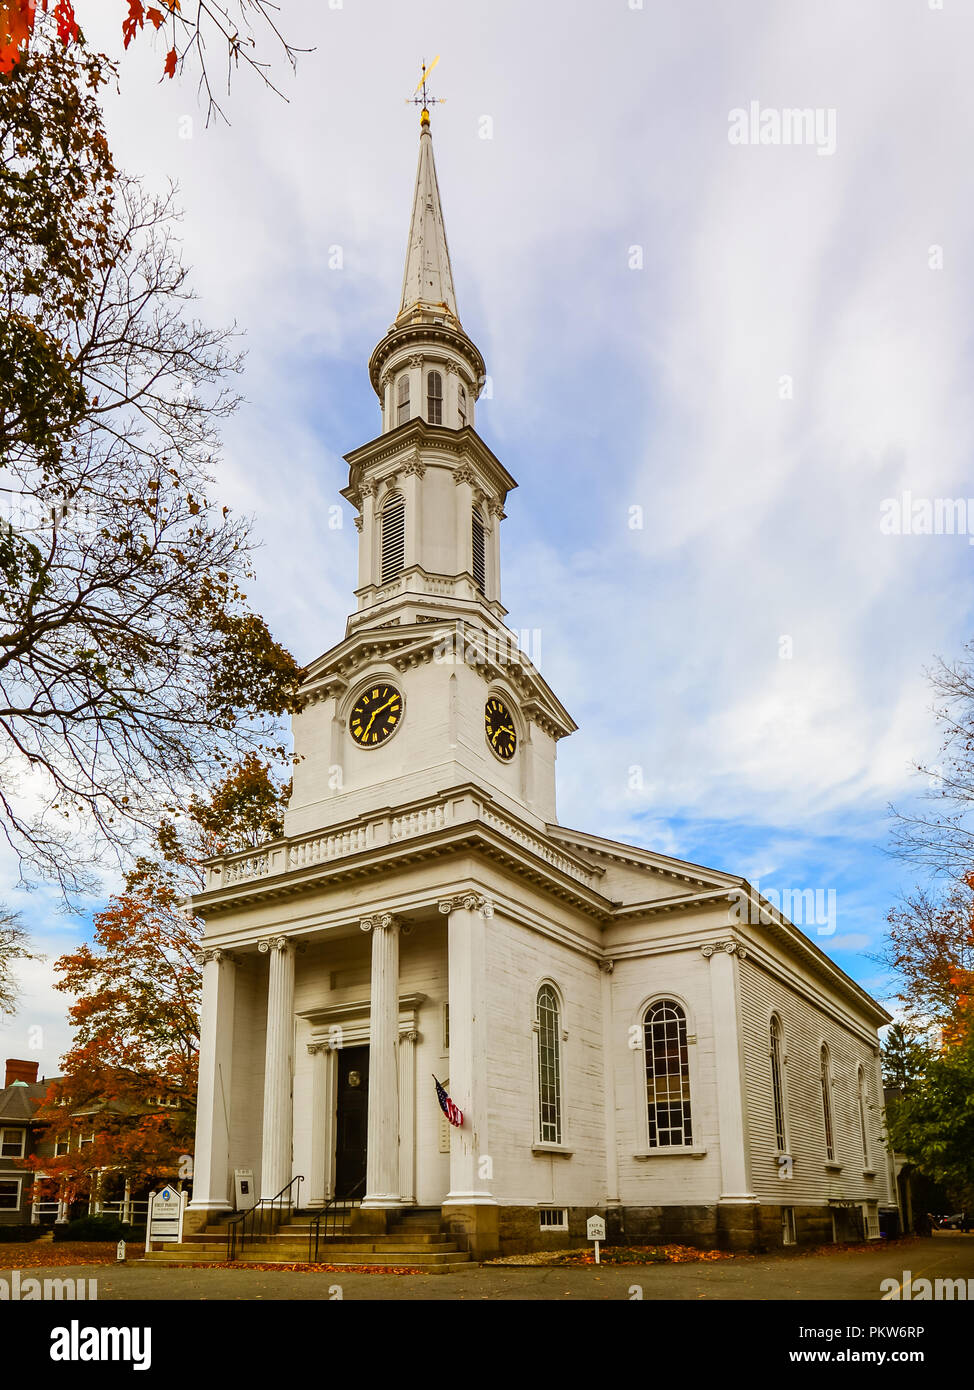 Première paroisse à Lexington en automne - Lexington, MA Banque D'Images